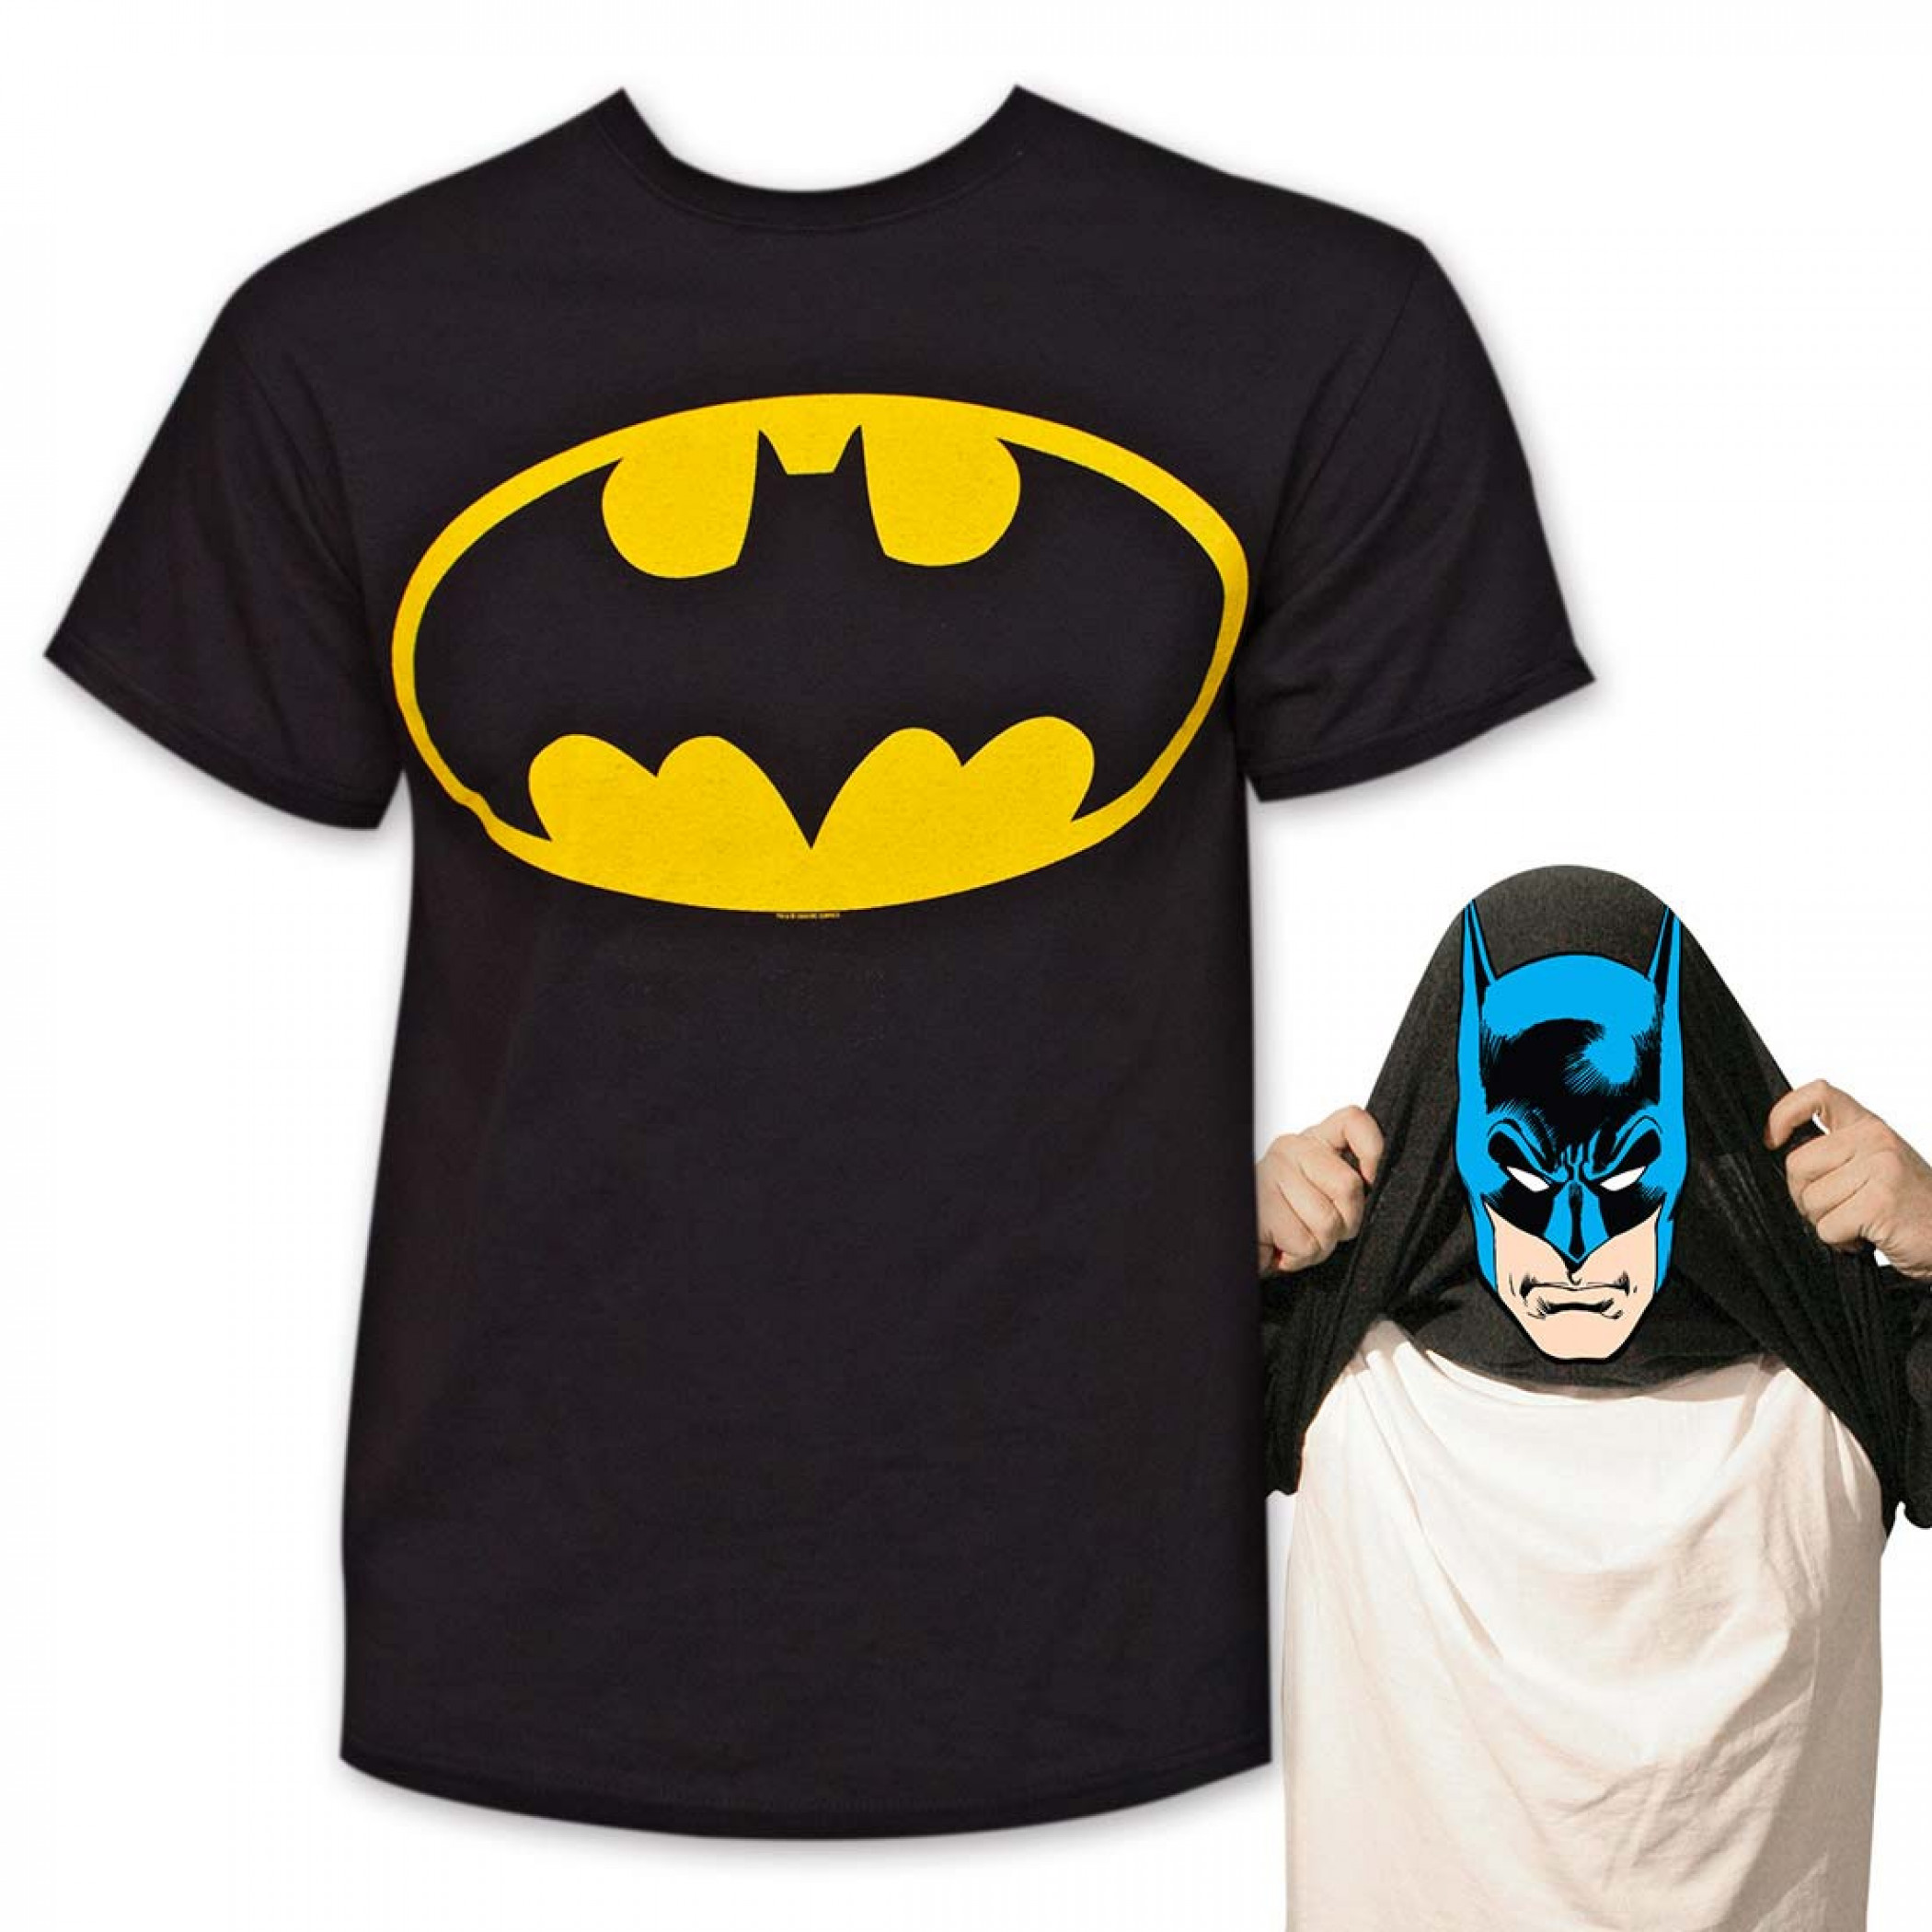 Batman t. Бэтмен т ширт. Футболка Бэтмена s22. Черная футболка Бэтмен. Футболка i am Batman.